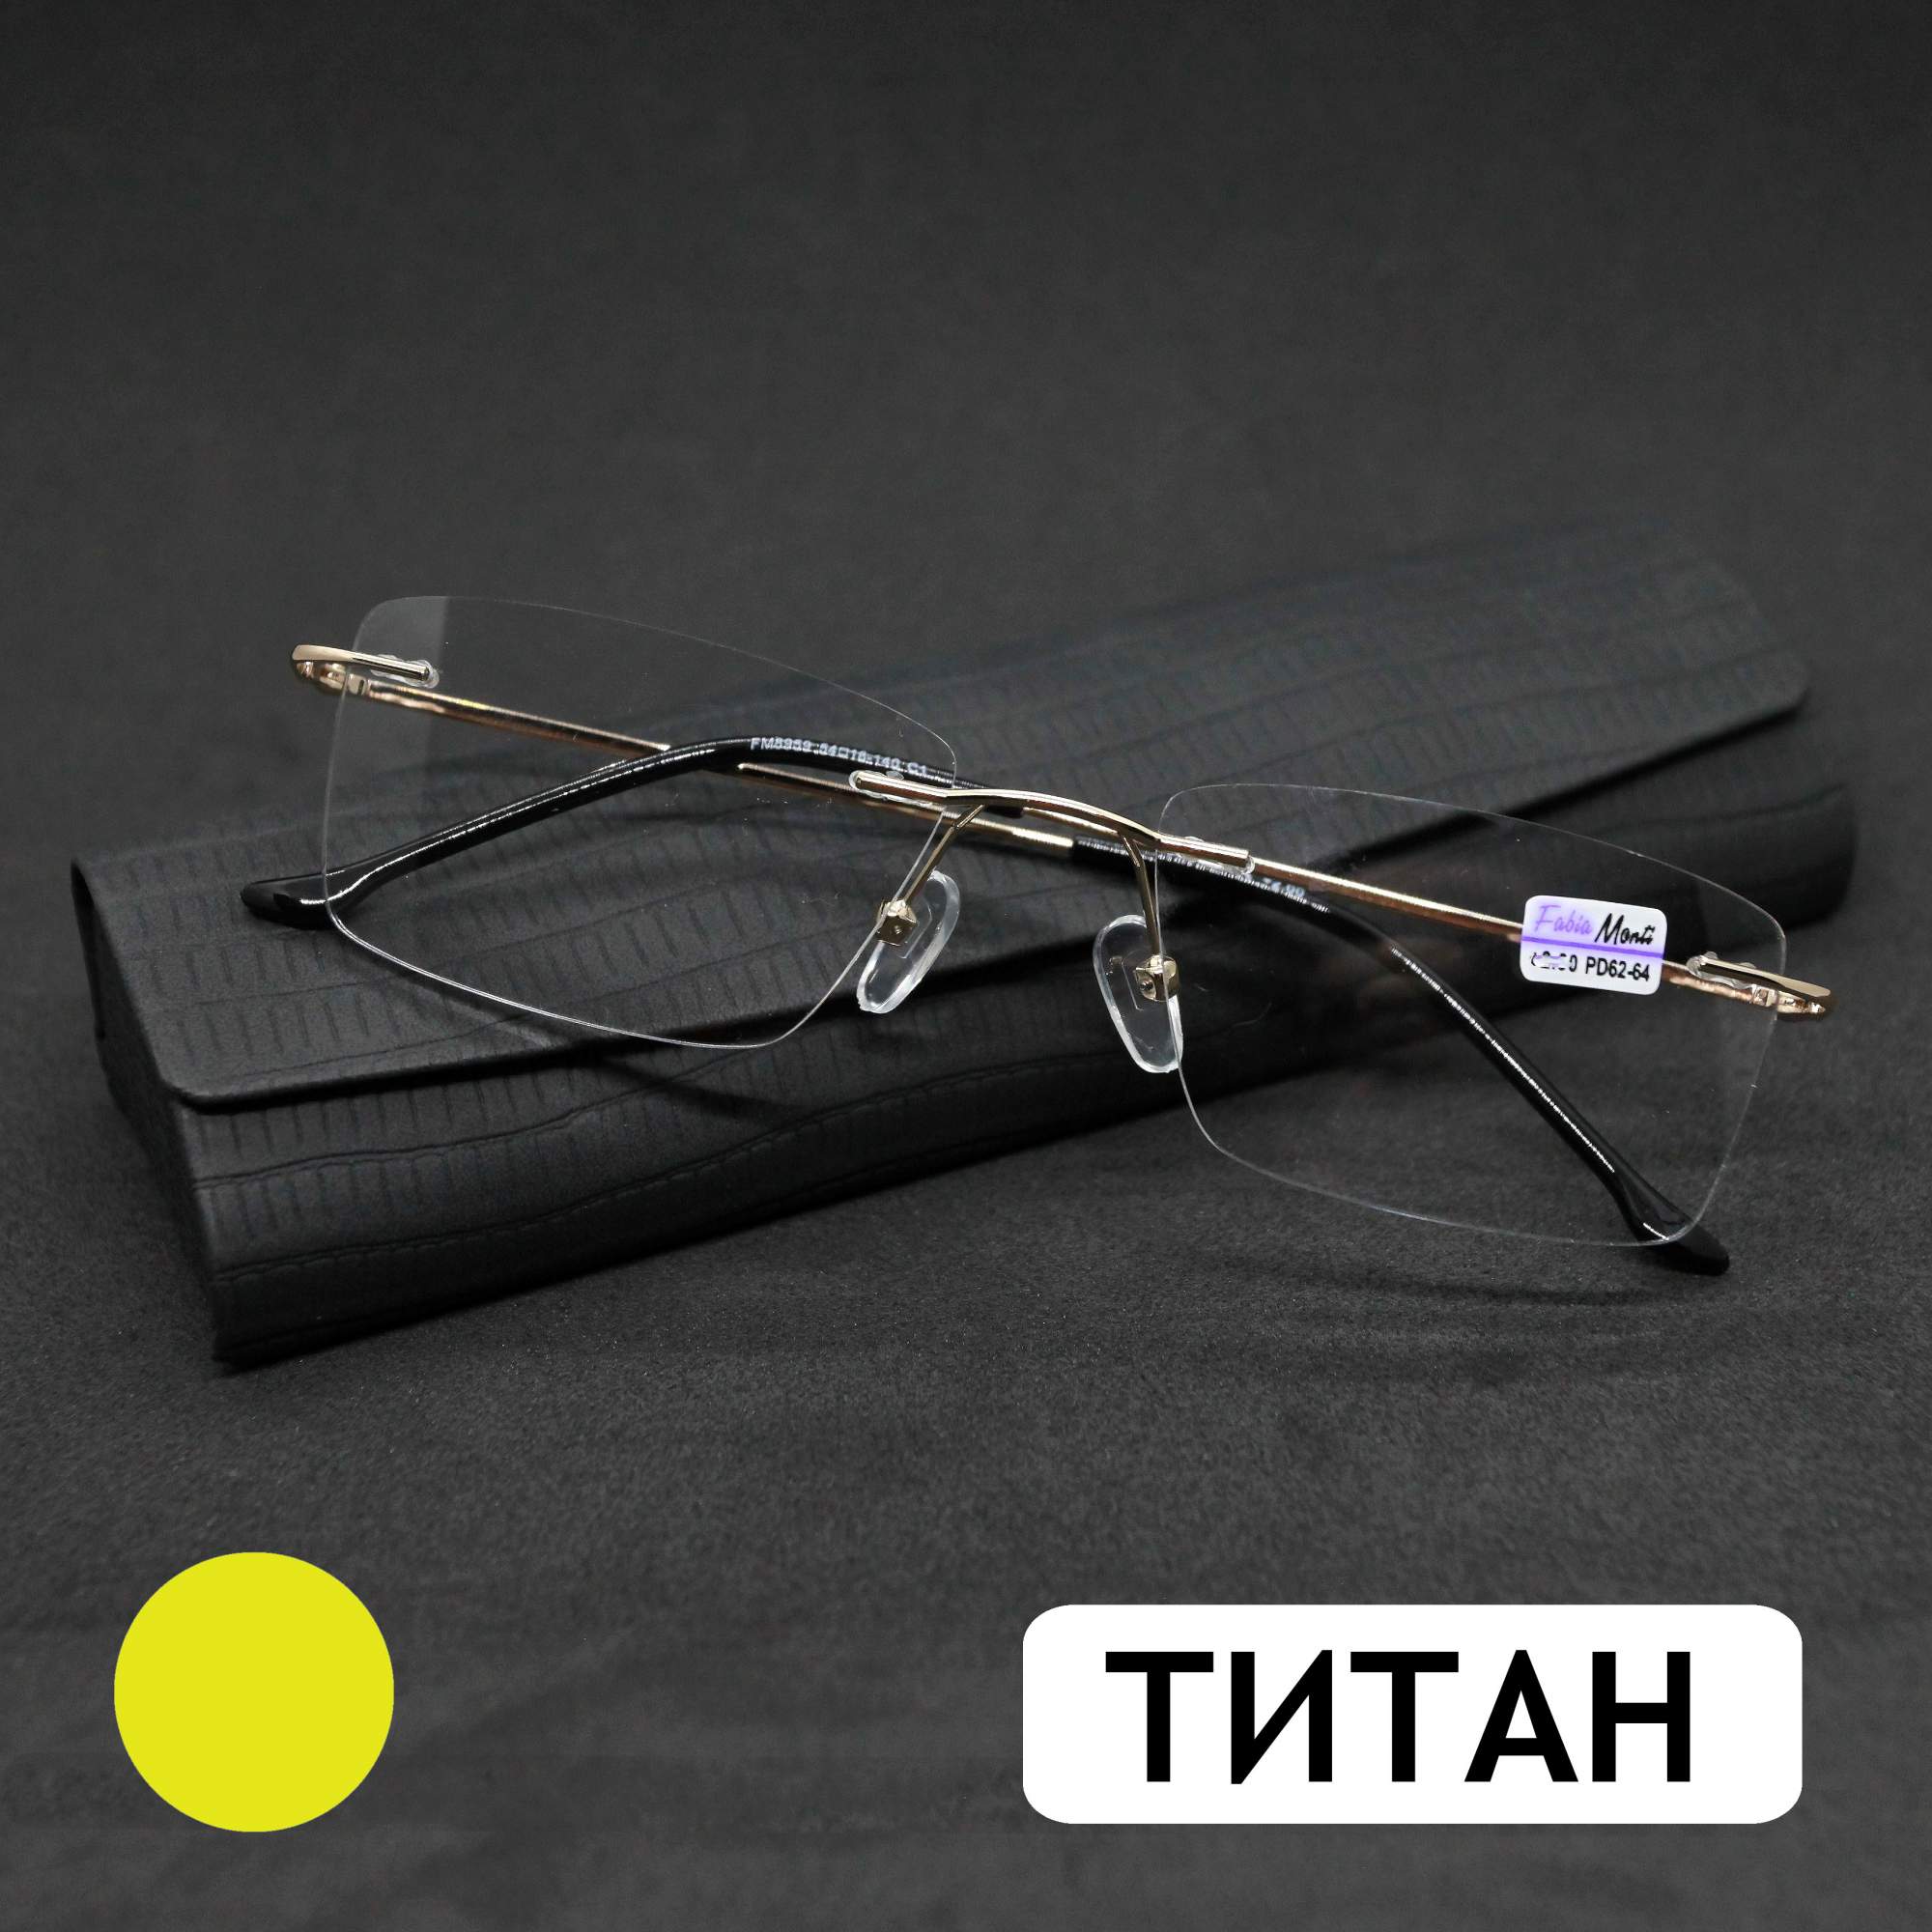 Безободковые очки FM 8959 -4.50, c футляром, оправа титан, золотые, РЦ 62-64